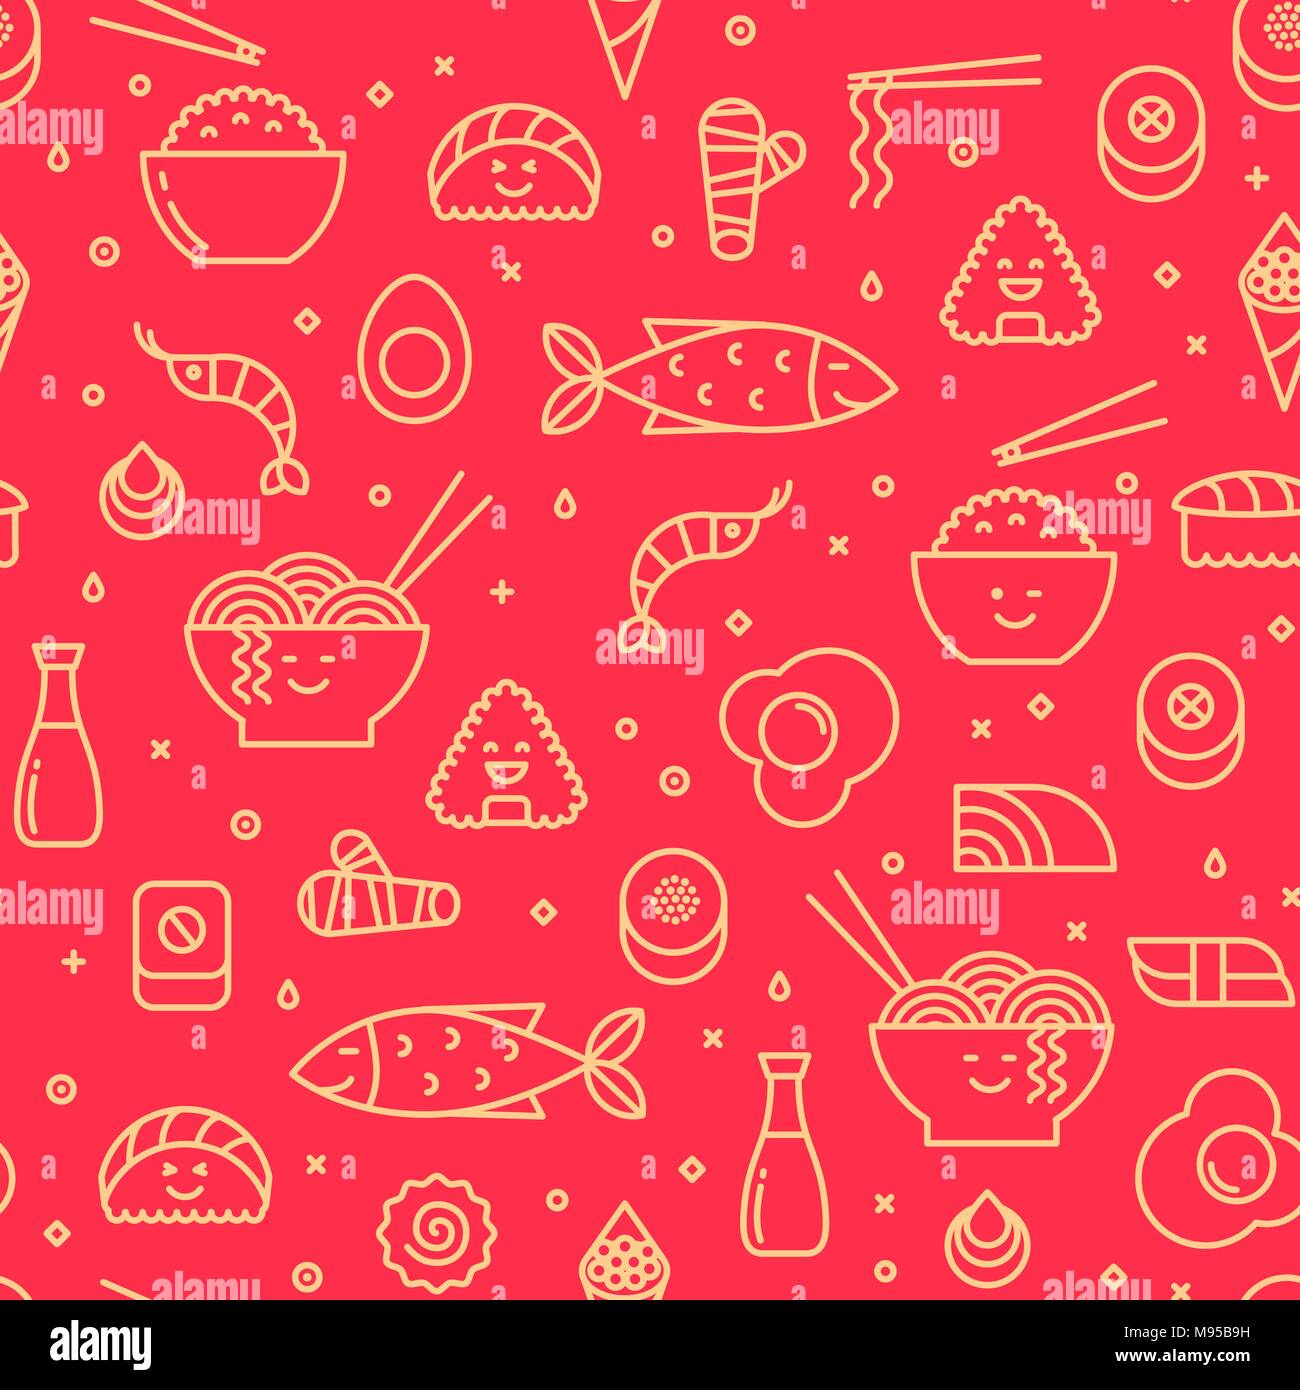 Spaß Vektor nahtlose Muster mit der japanischen Küche wie Sushi, Reis, Brötchen, Fisch. Die roten und gelben Farben. Lächelnde Gesichter, iconic Stil, Line Art. Stock Vektor